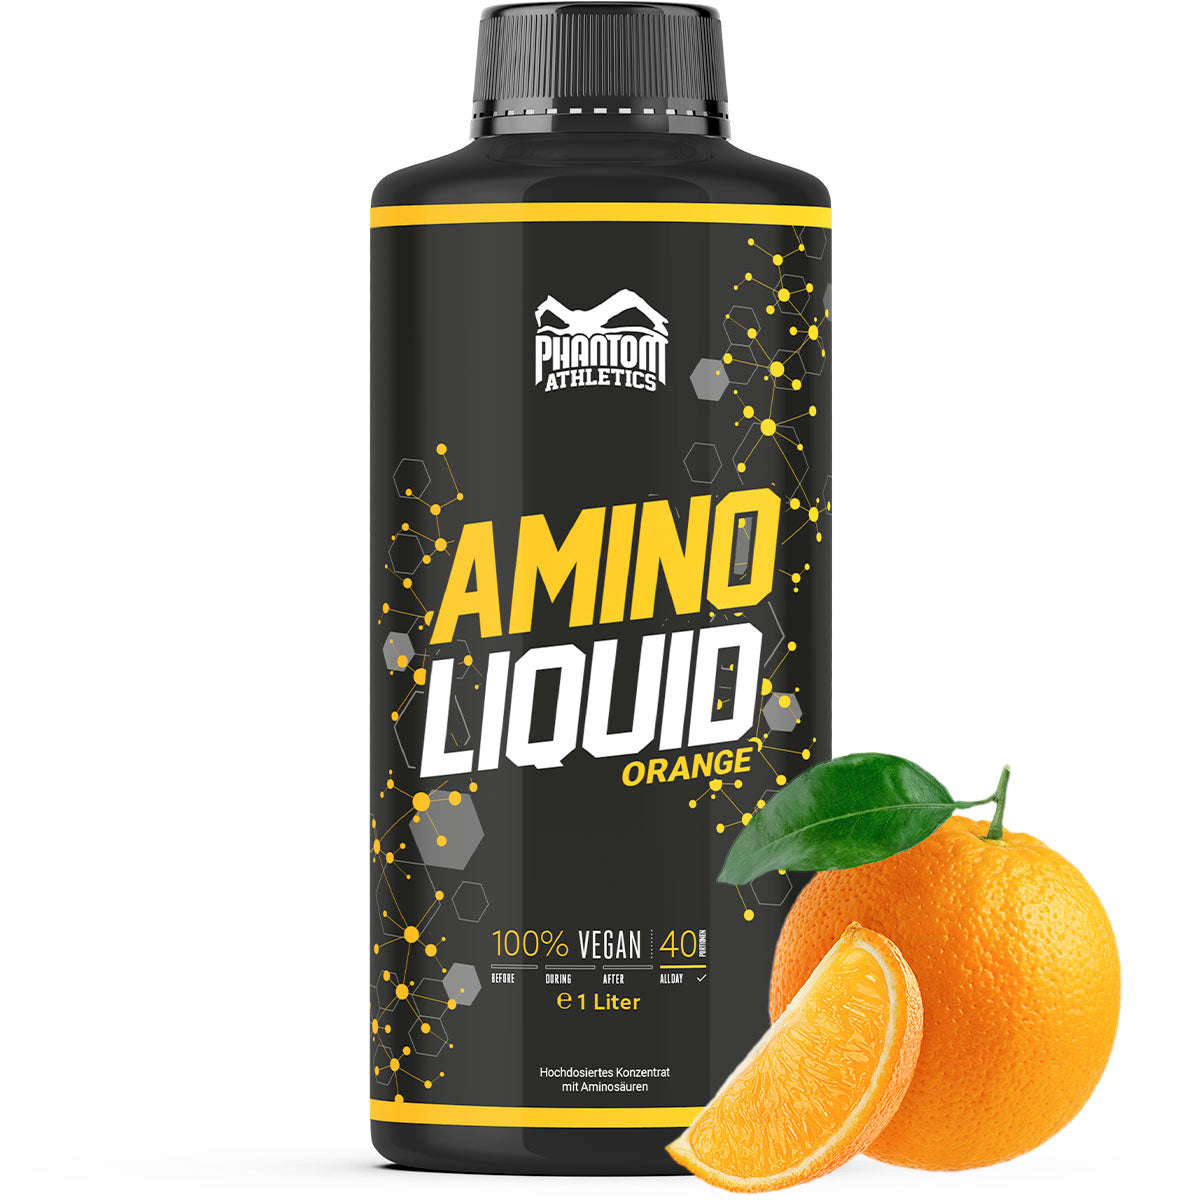 Phantom Amino Liquid suplemento nutricional para artes marciales